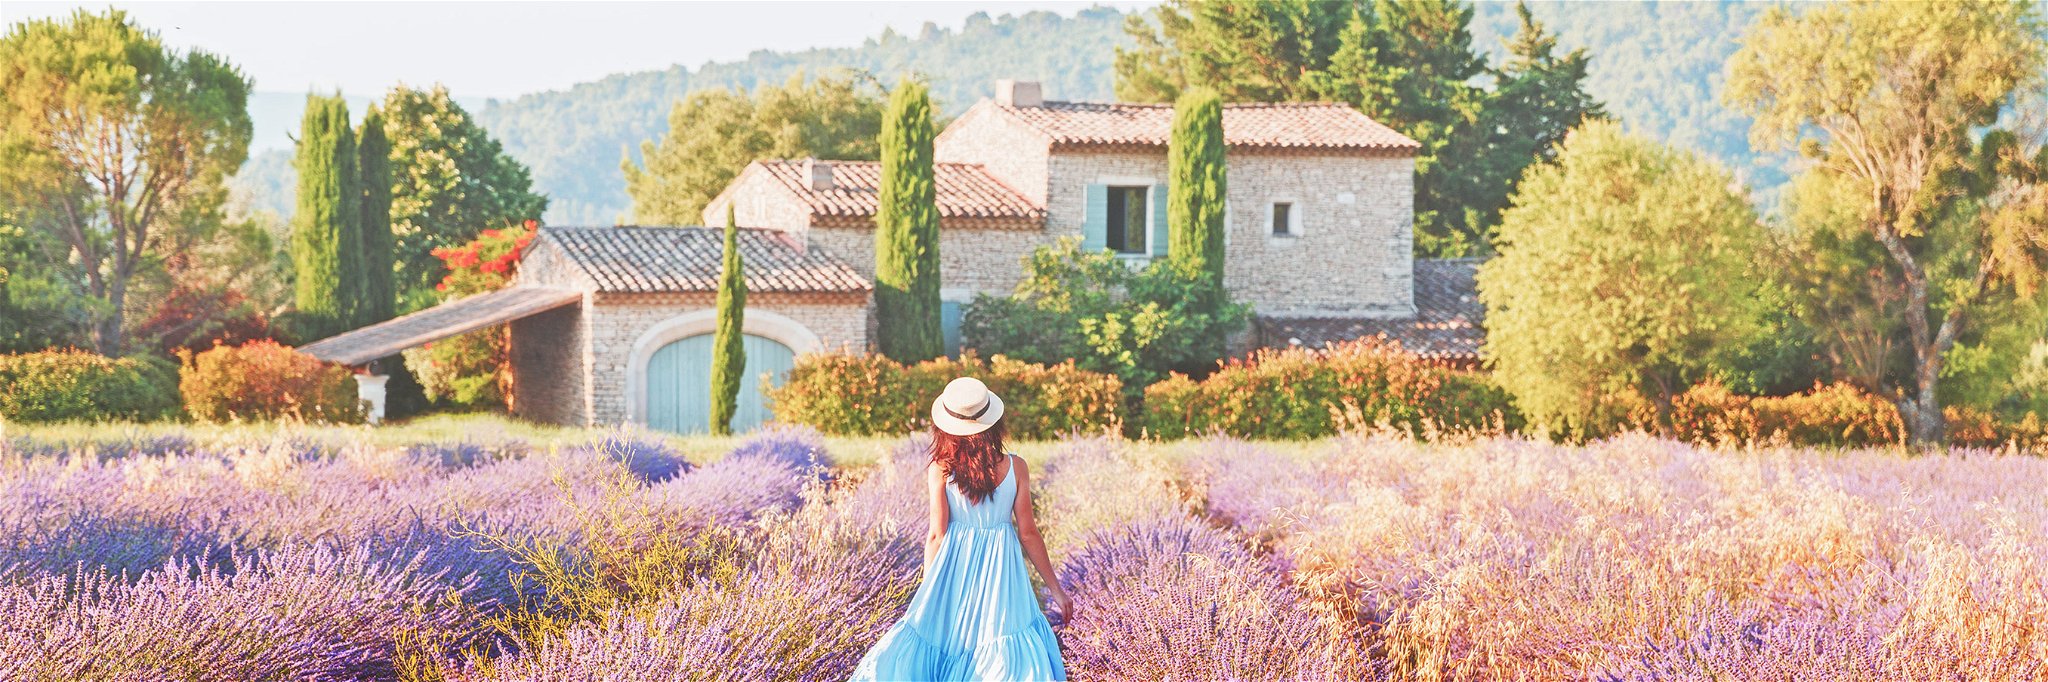 Die malerische Provence geniessen.